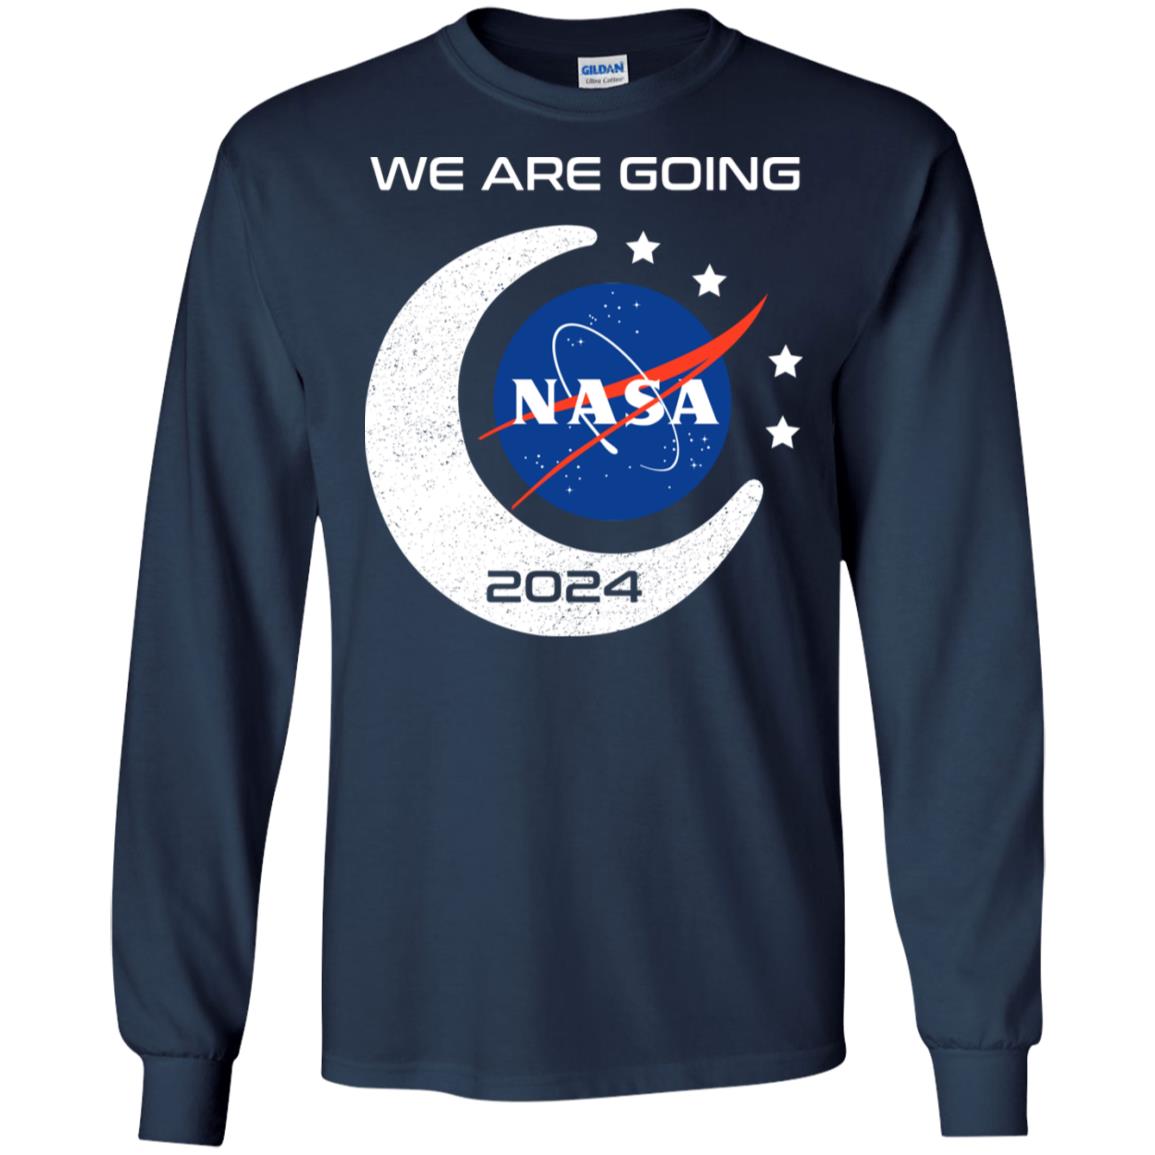 We are going Nasa 2024 hoodie, t shirt - RobinPlaceFabrics